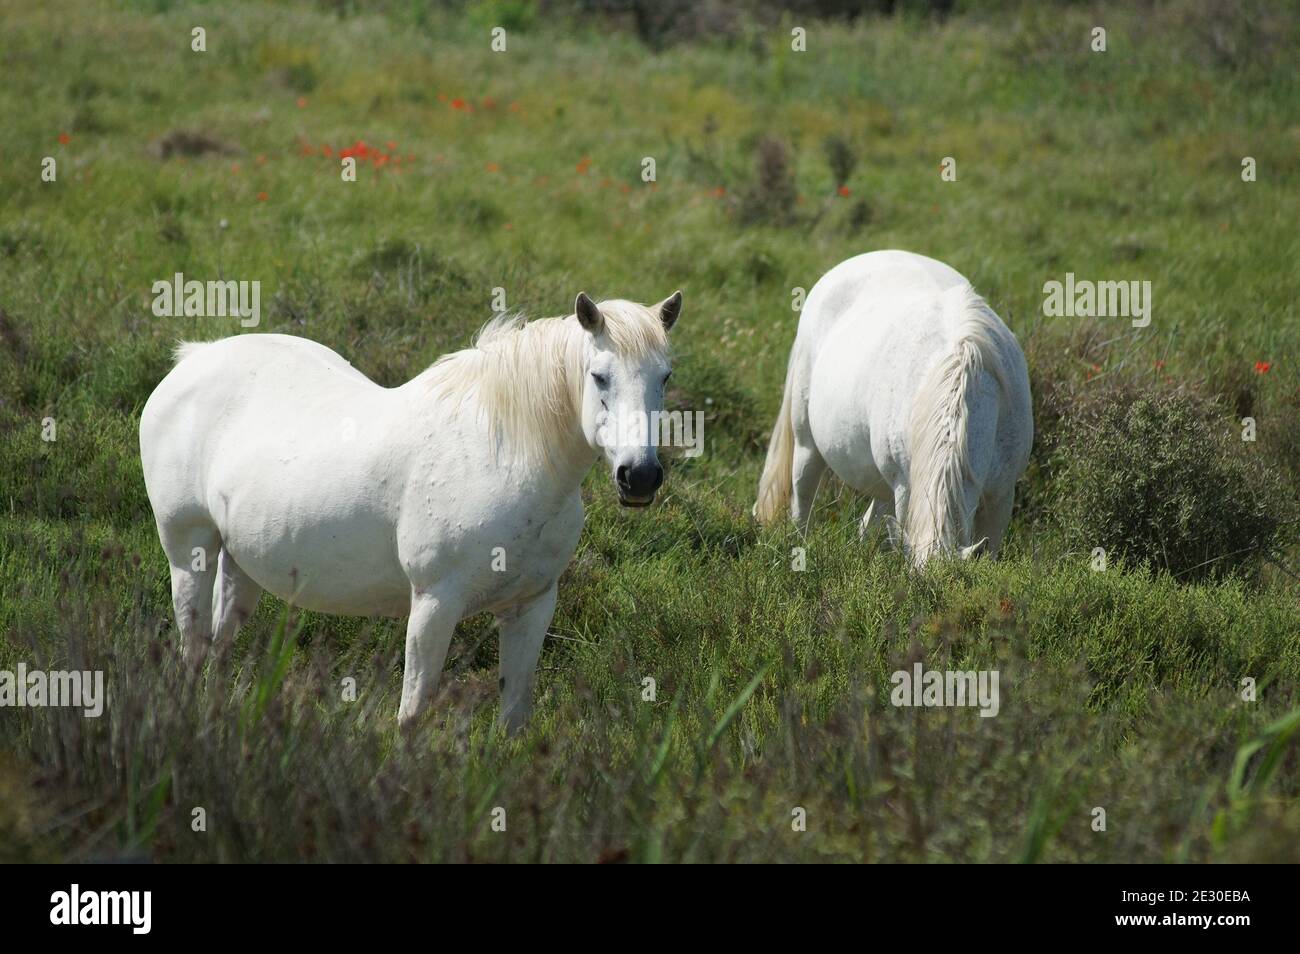 Wild horses. Stock Photo